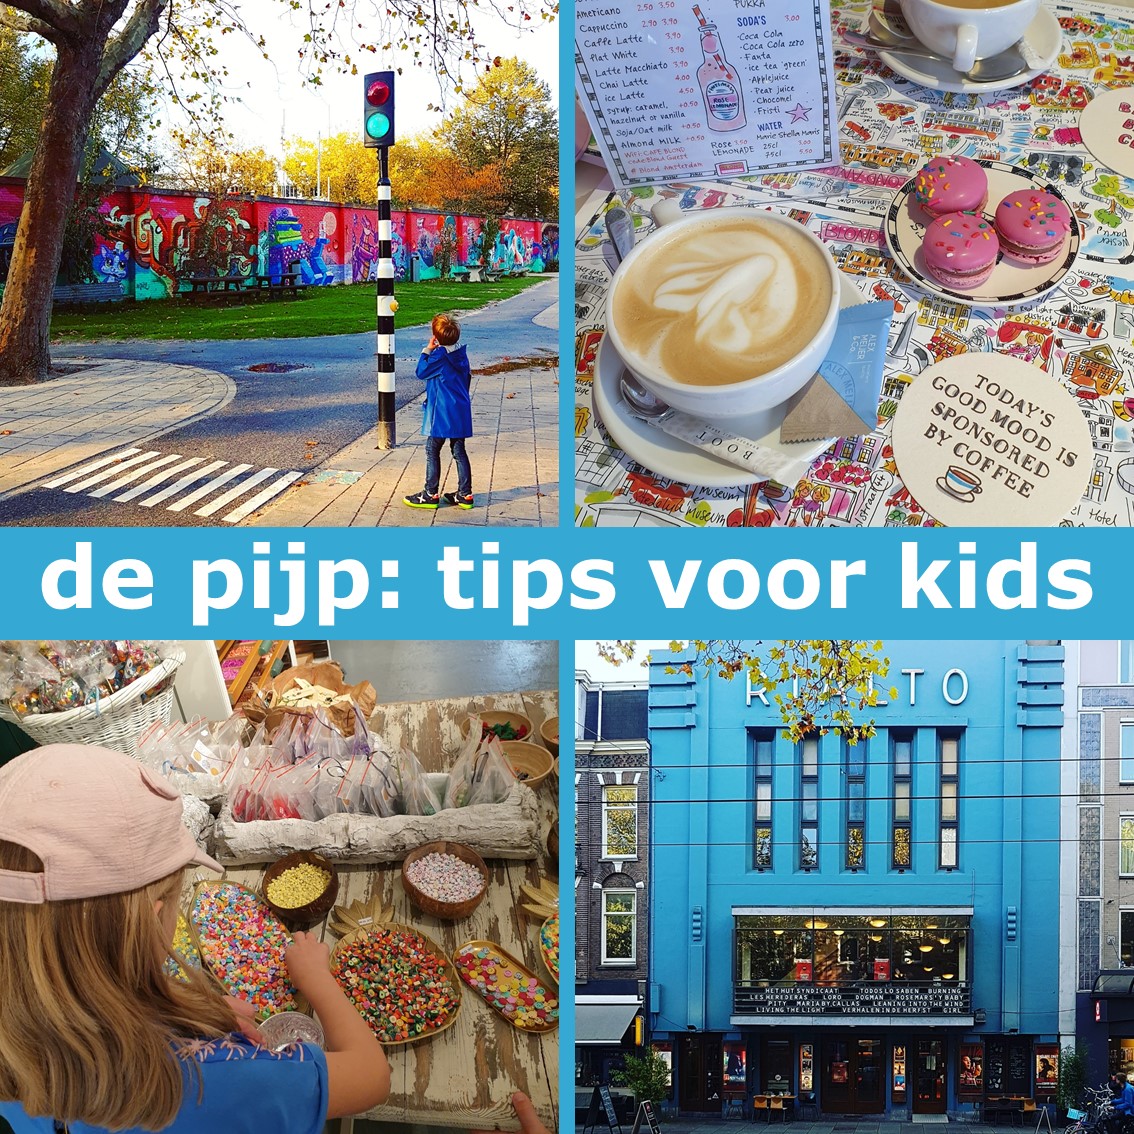 Amsterdam met kinderen: winkels, restaurants en speeltuinen in de Pijp. Het is een van de leukste buurten van Amsterdam: de Pijp. Met heel veel leuke winkels en restaurants, maar ook leuke speeltuinen, parken en een kinderboerderij. Ik laat je onze tips voor gezinnen met kinderen zien in de Pijp in Amsterdam. 